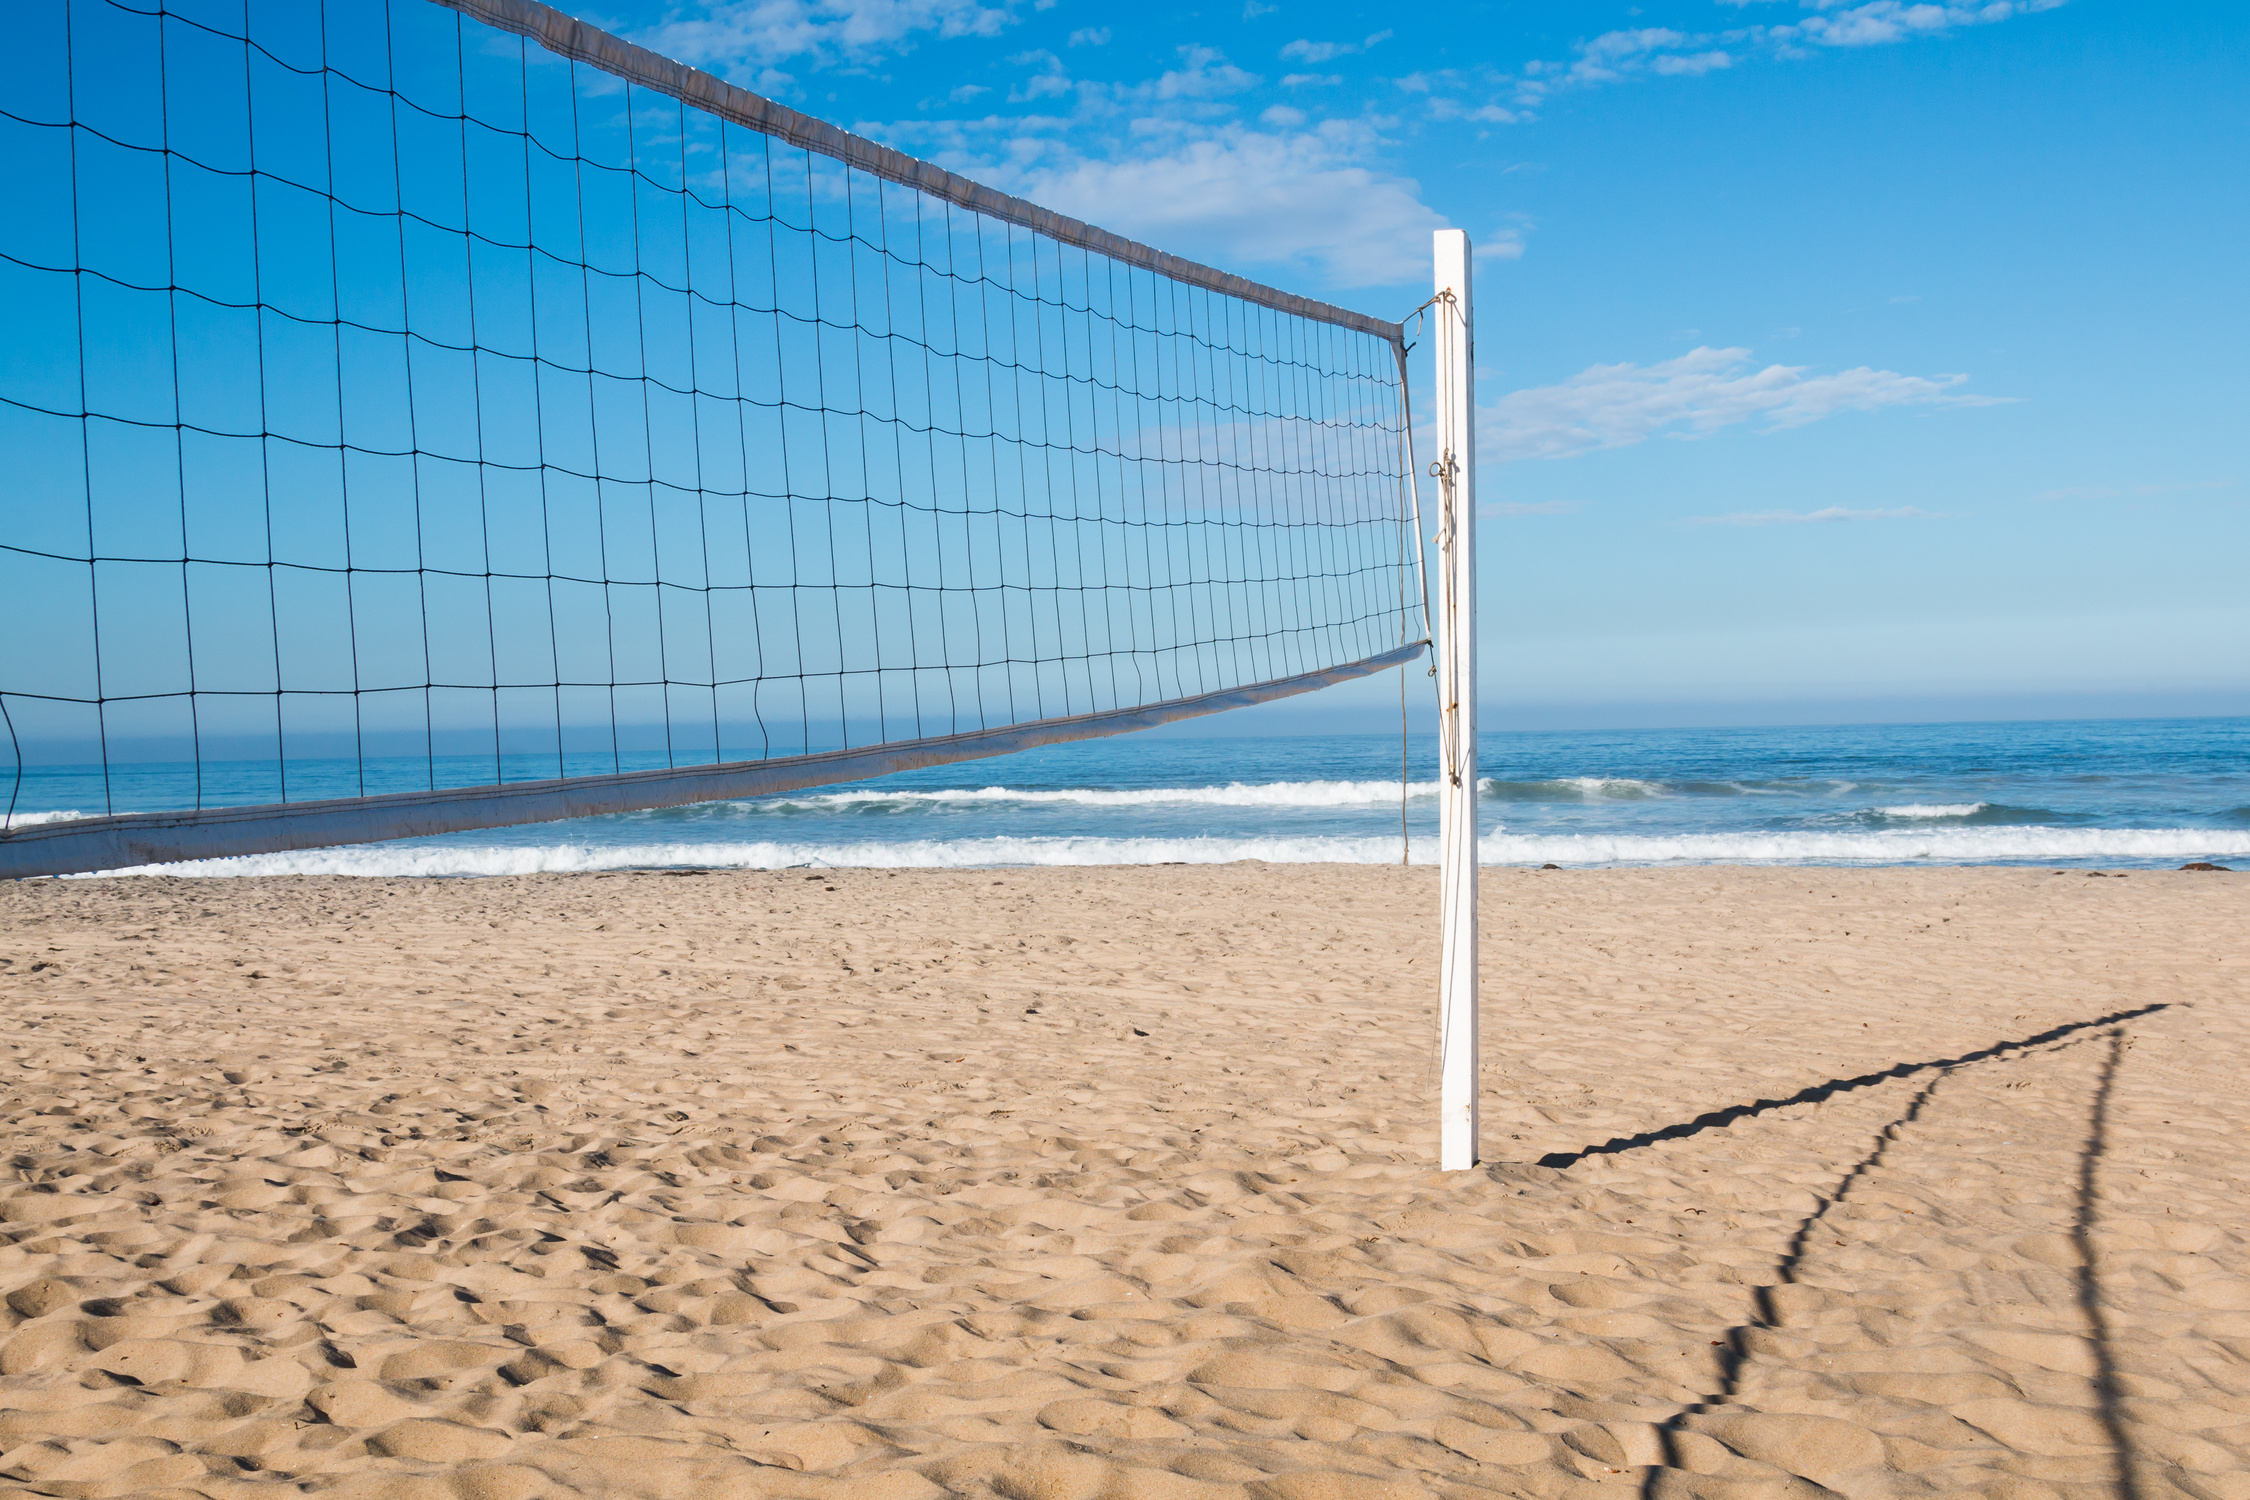 Beach Volleyball Court